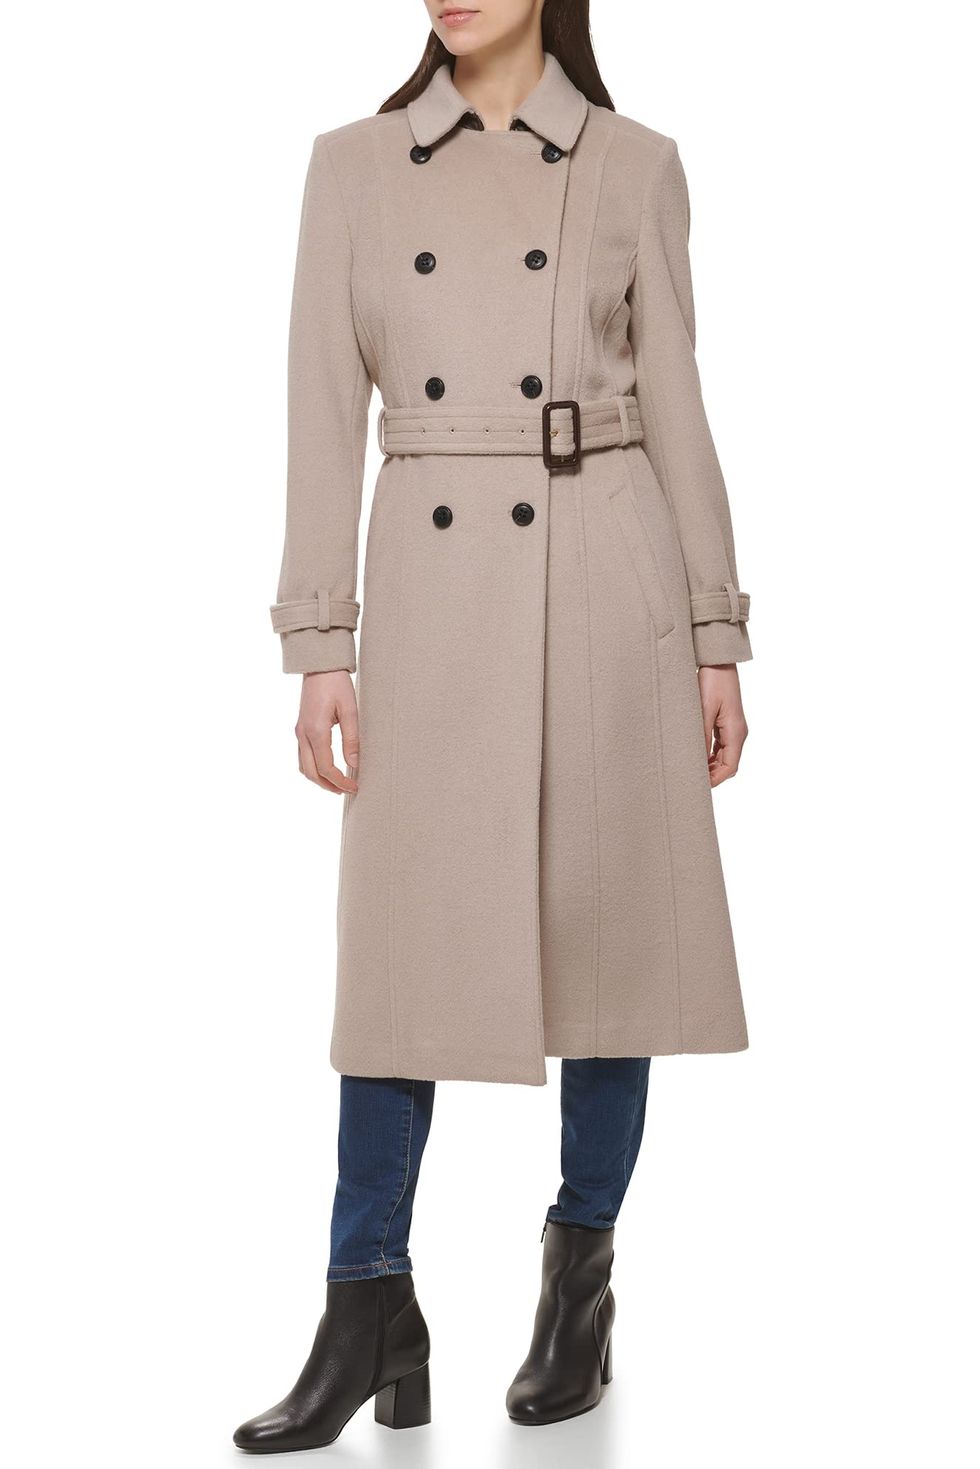 100% Wool Cropped Jacket  Wool jackets women, Short wool coat